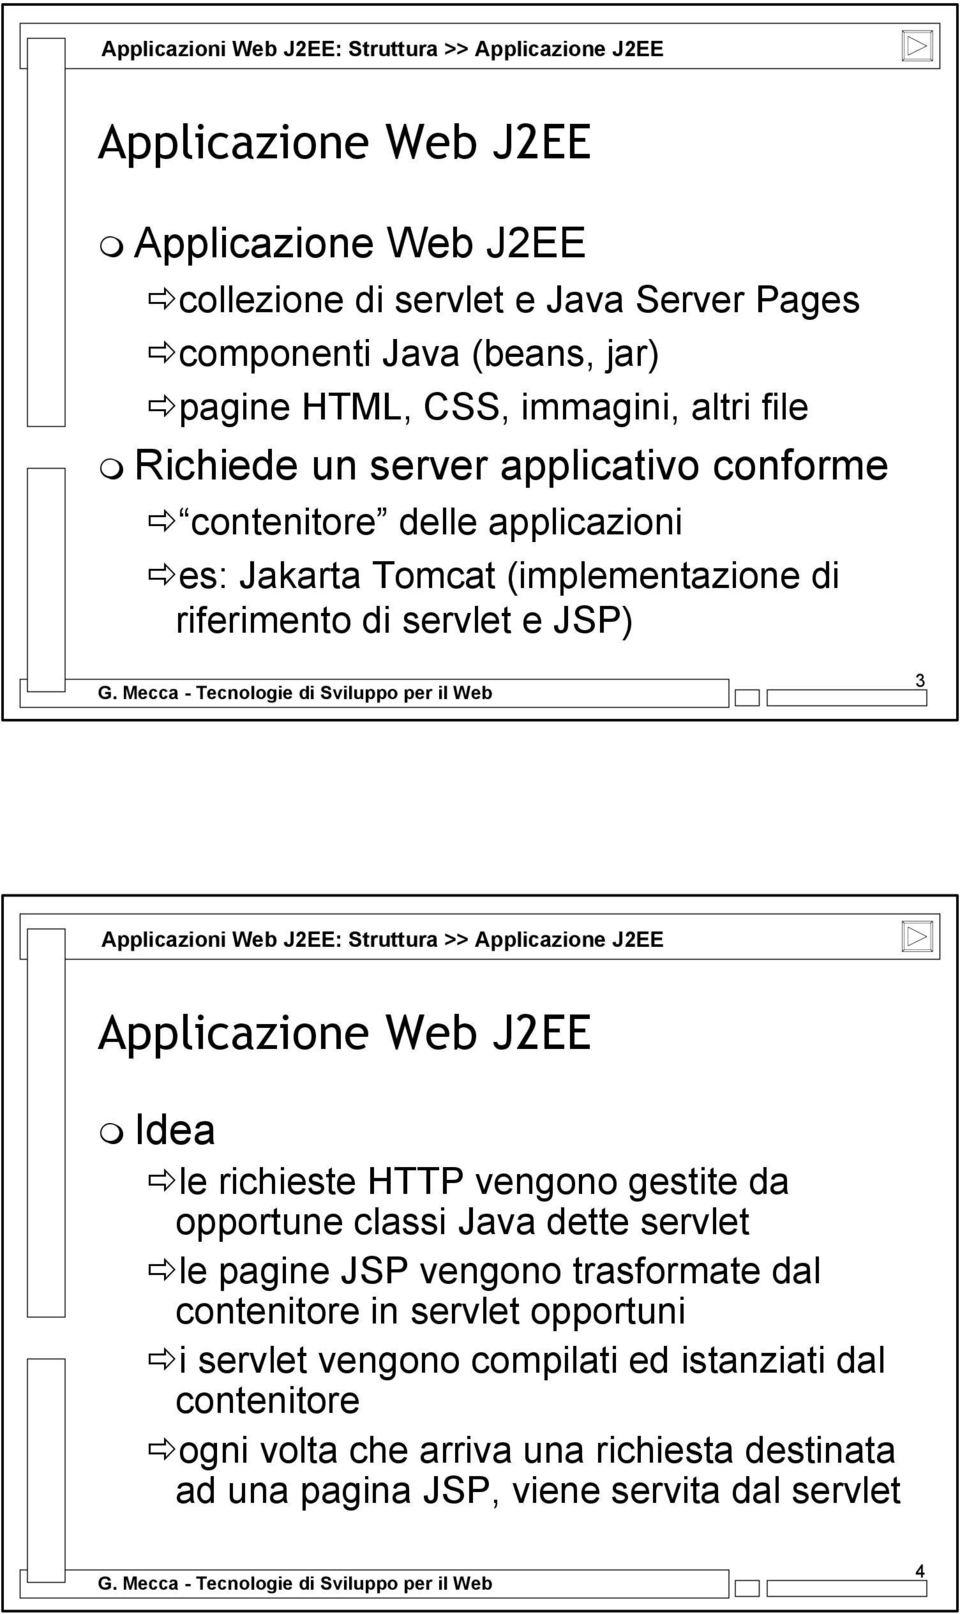 Web J2EE: Struttura >> Applicazione J2EE Applicazione Web J2EE Idea le richieste HTTP vengono gestite da opportune classi Java dette servlet le pagine JSP vengono trasformate dal